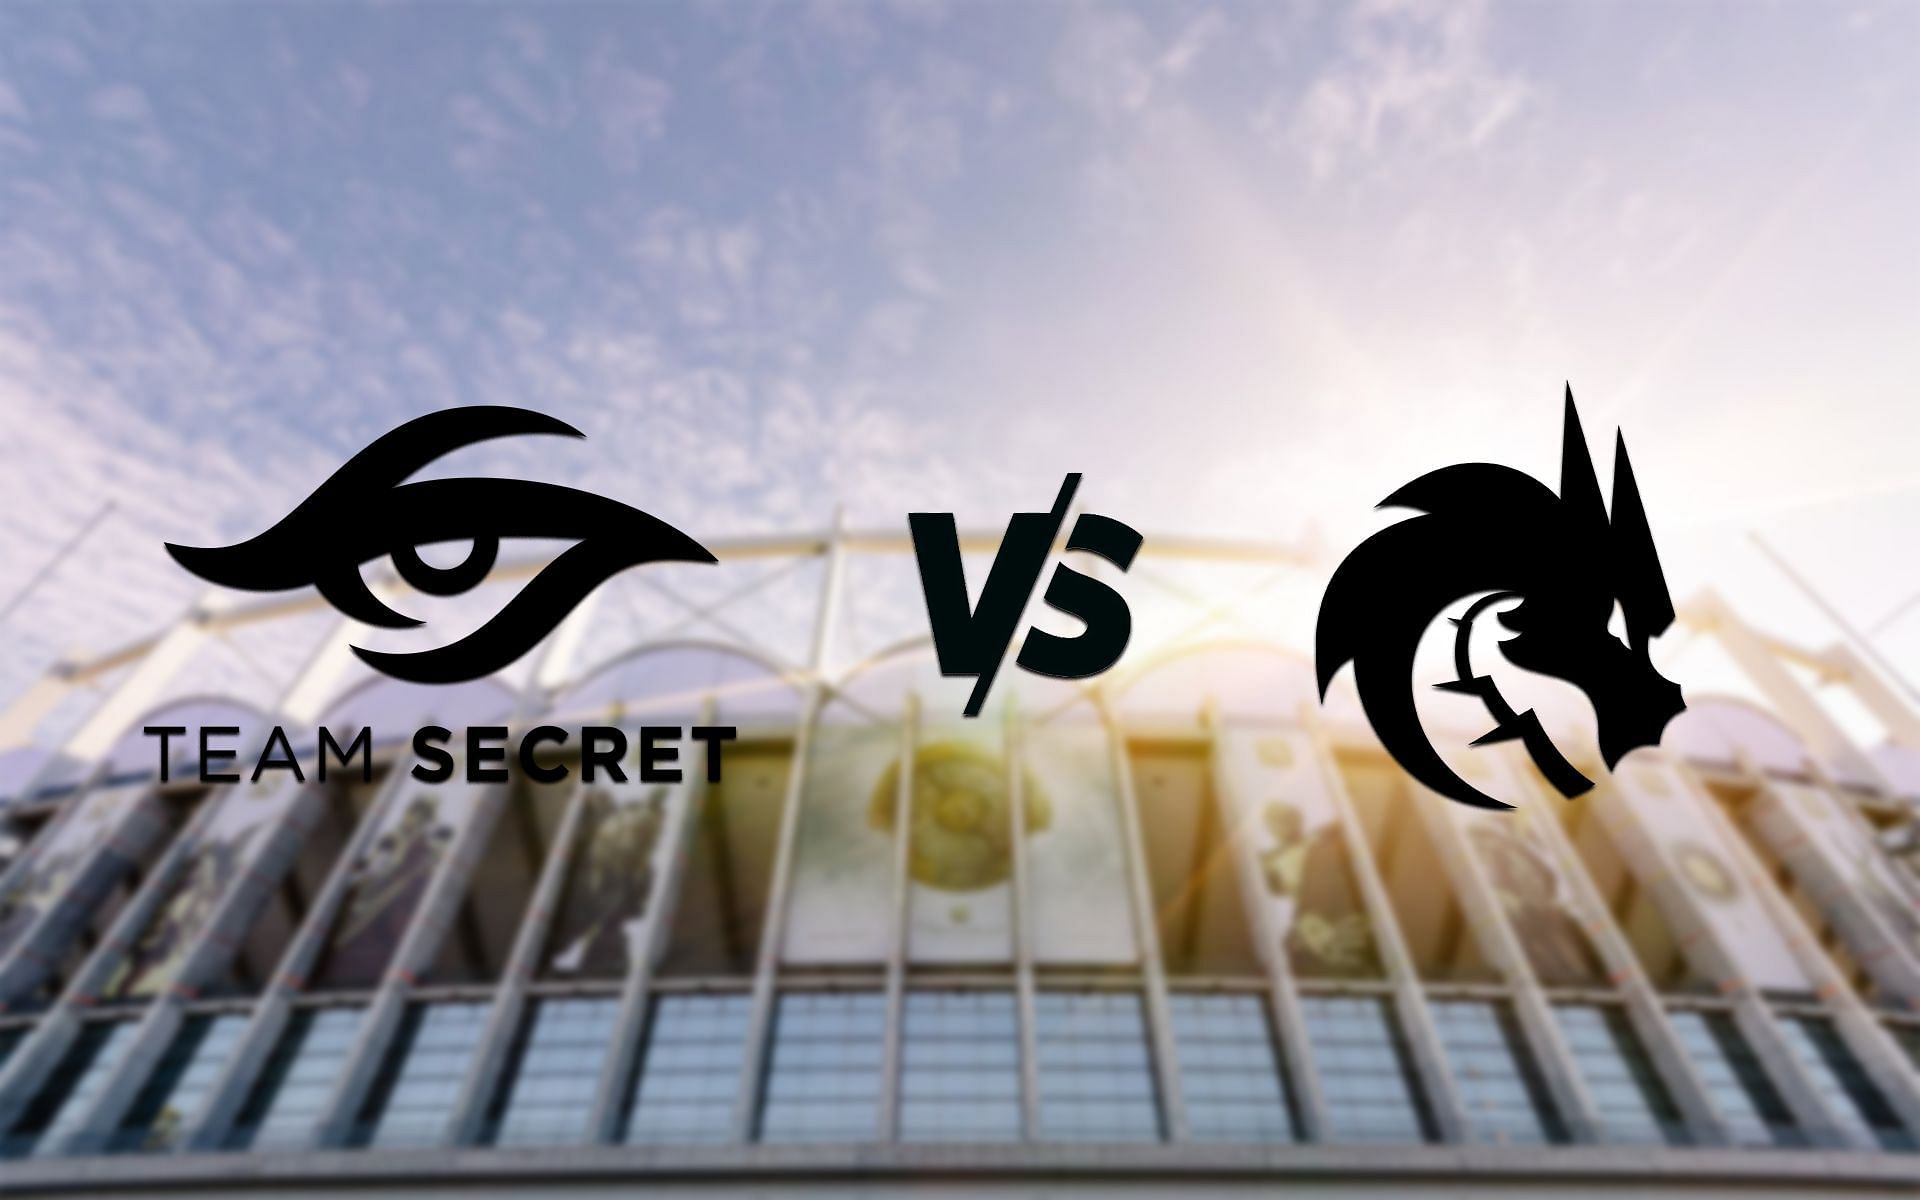 Team Secret vs Team Spirit at Dota 2